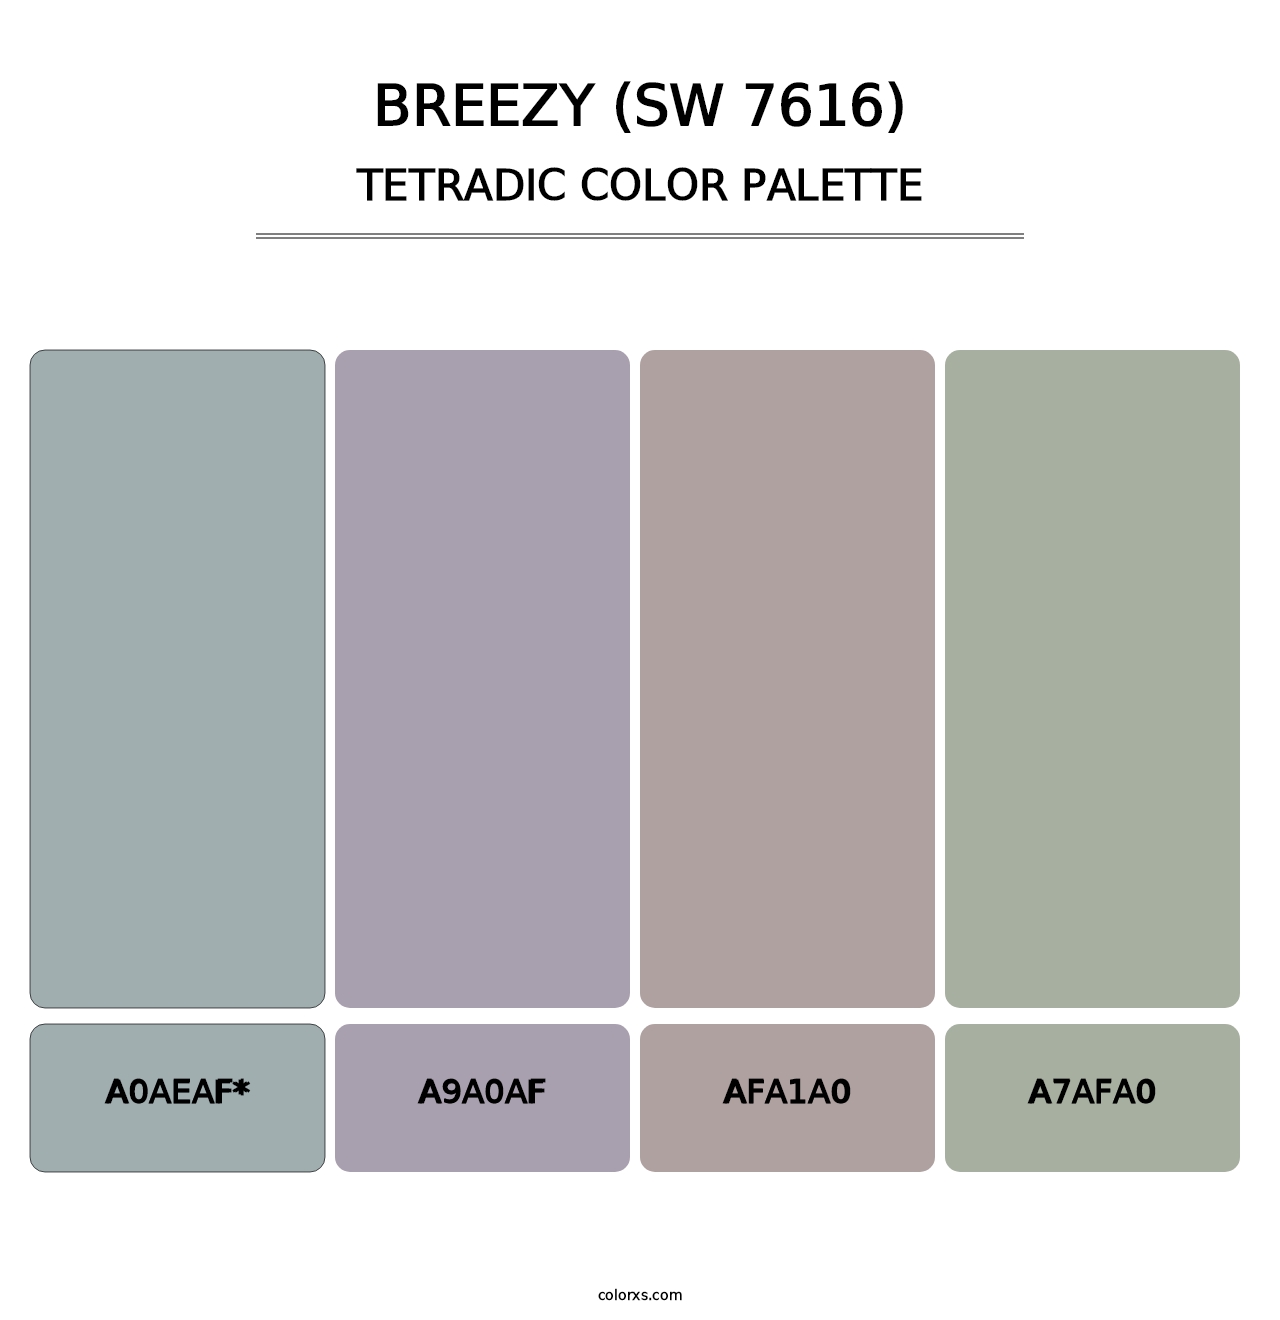 Breezy (SW 7616) - Tetradic Color Palette